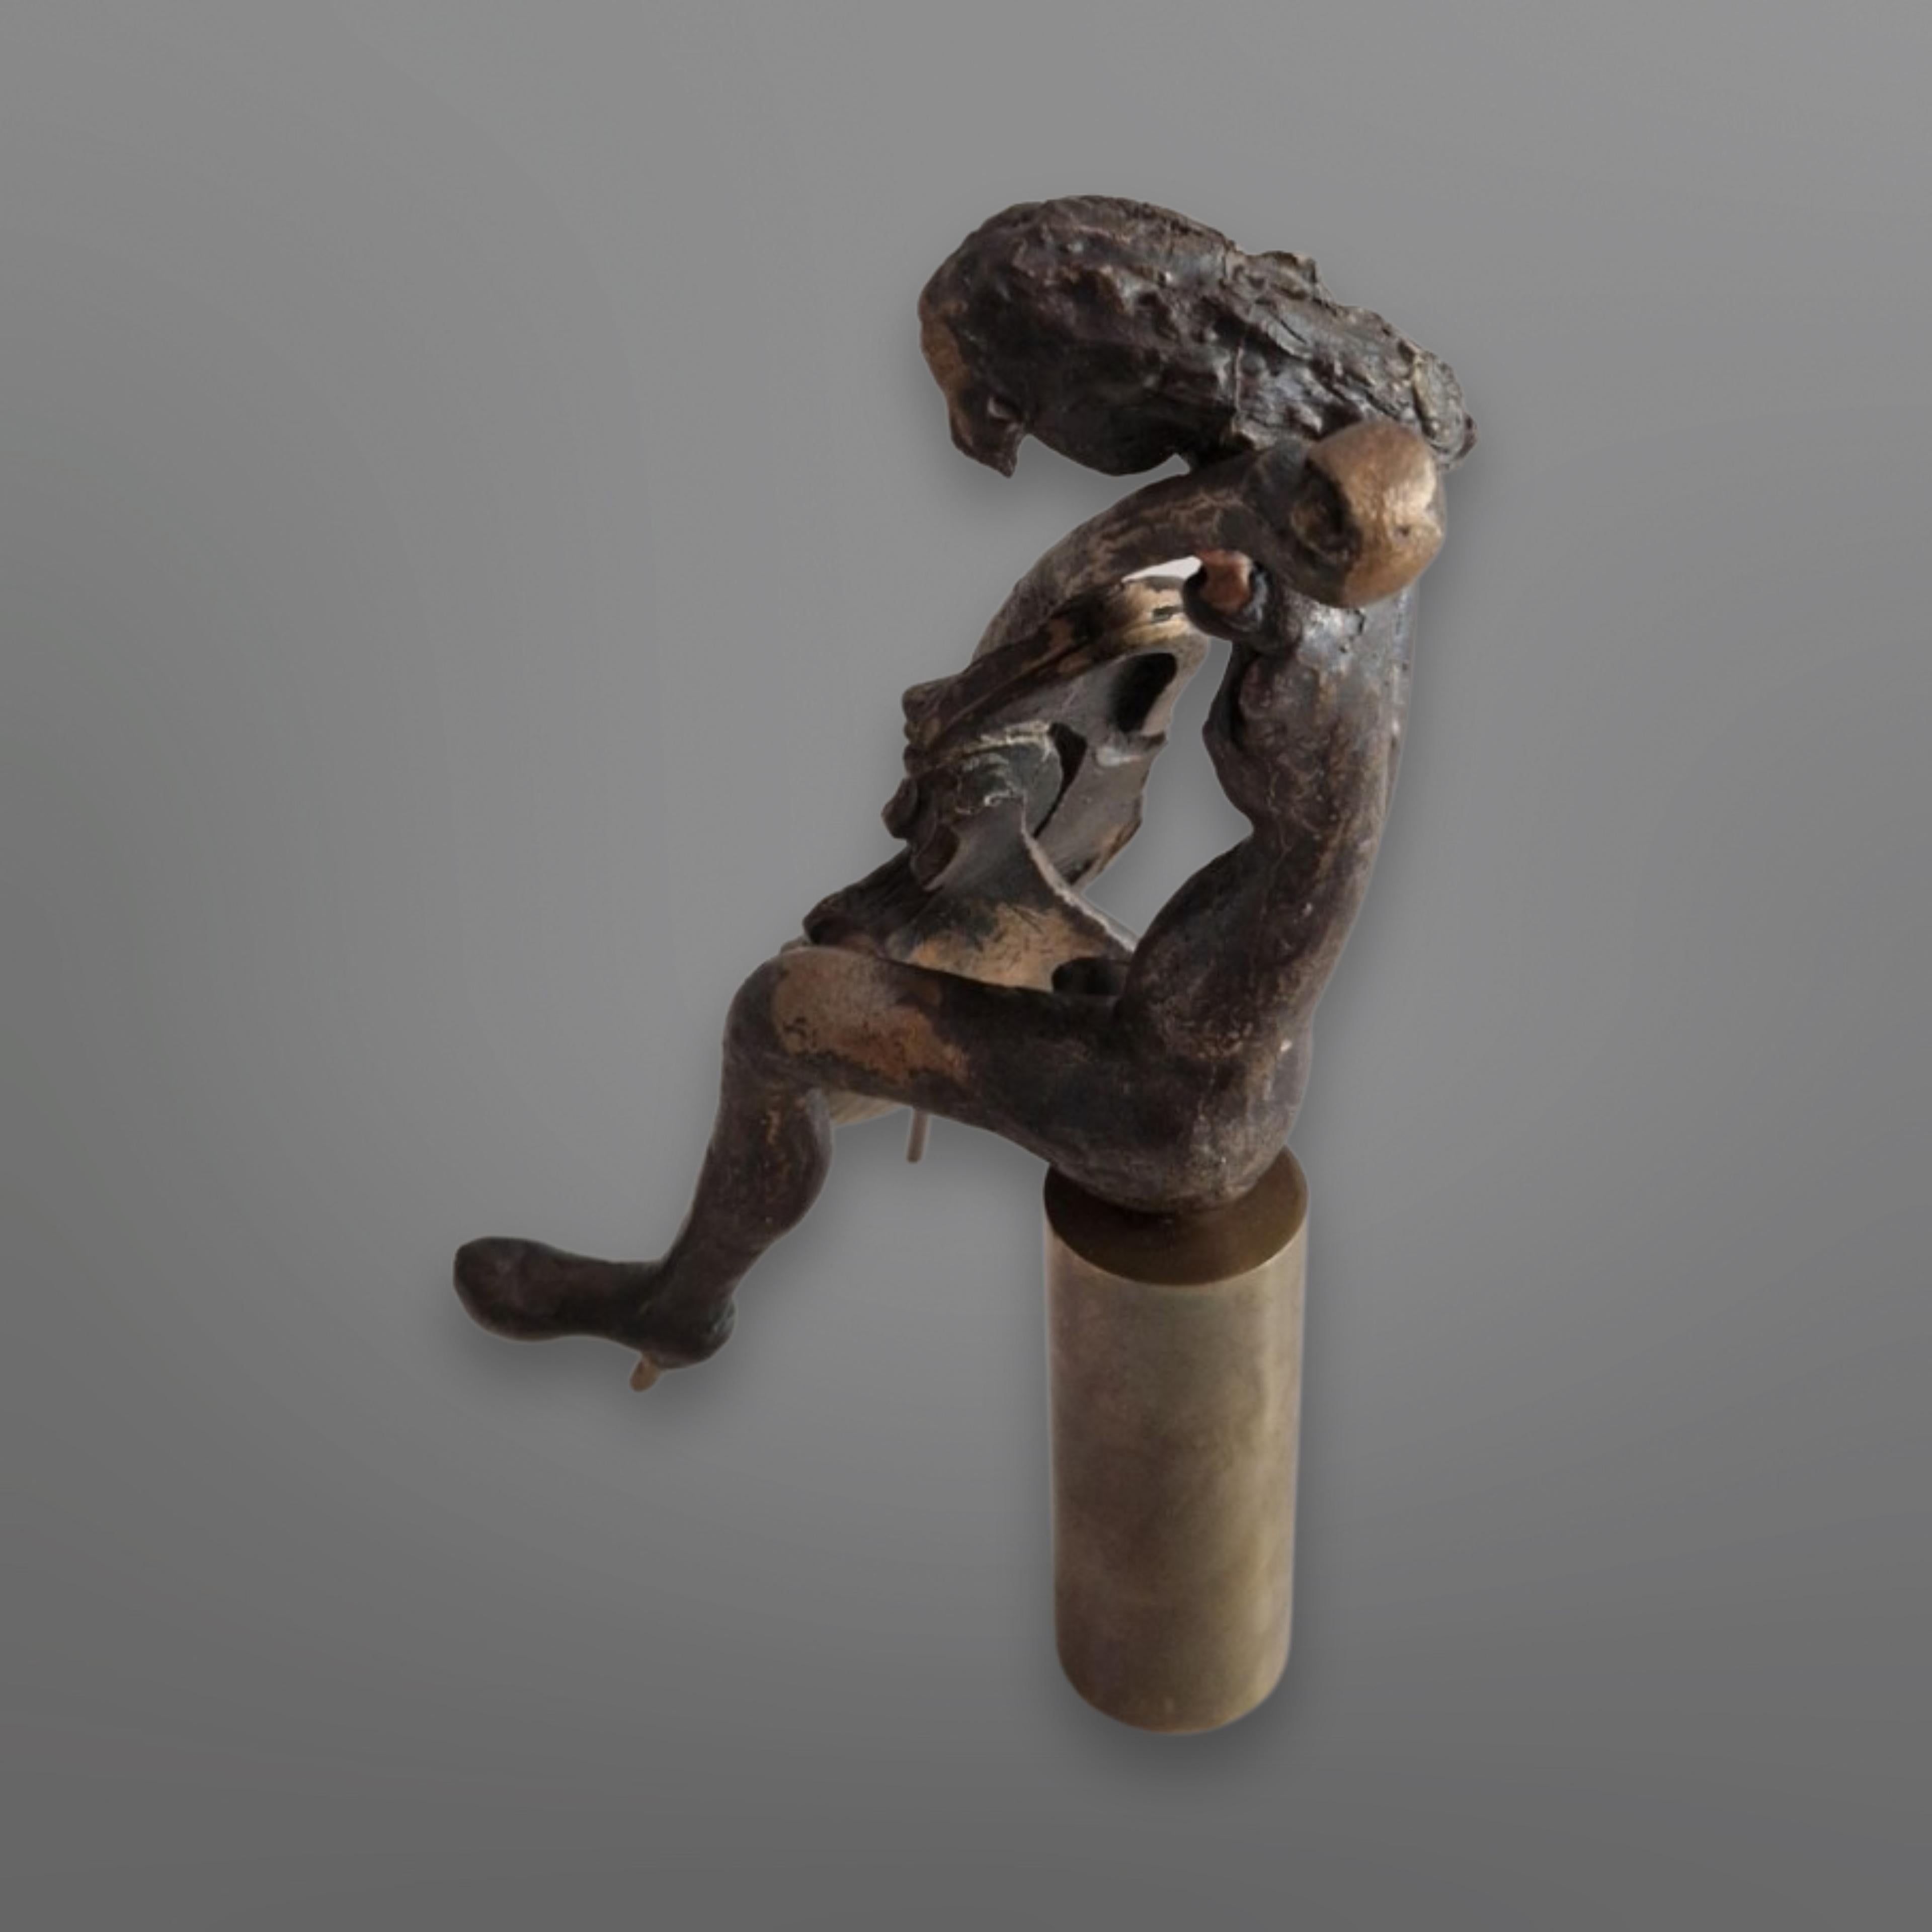 Kleiner Bronzeguss  abstrakte Statue. Es zeigt eine Cellospielerin, die auf einem runden Hocker sitzt. Es ist im Stil von Yves Lohé gestaltet. Keine Unterschrift oder Markierungen sichtbar. 

- Die abstrakte Kunst verwendet die visuelle Sprache von